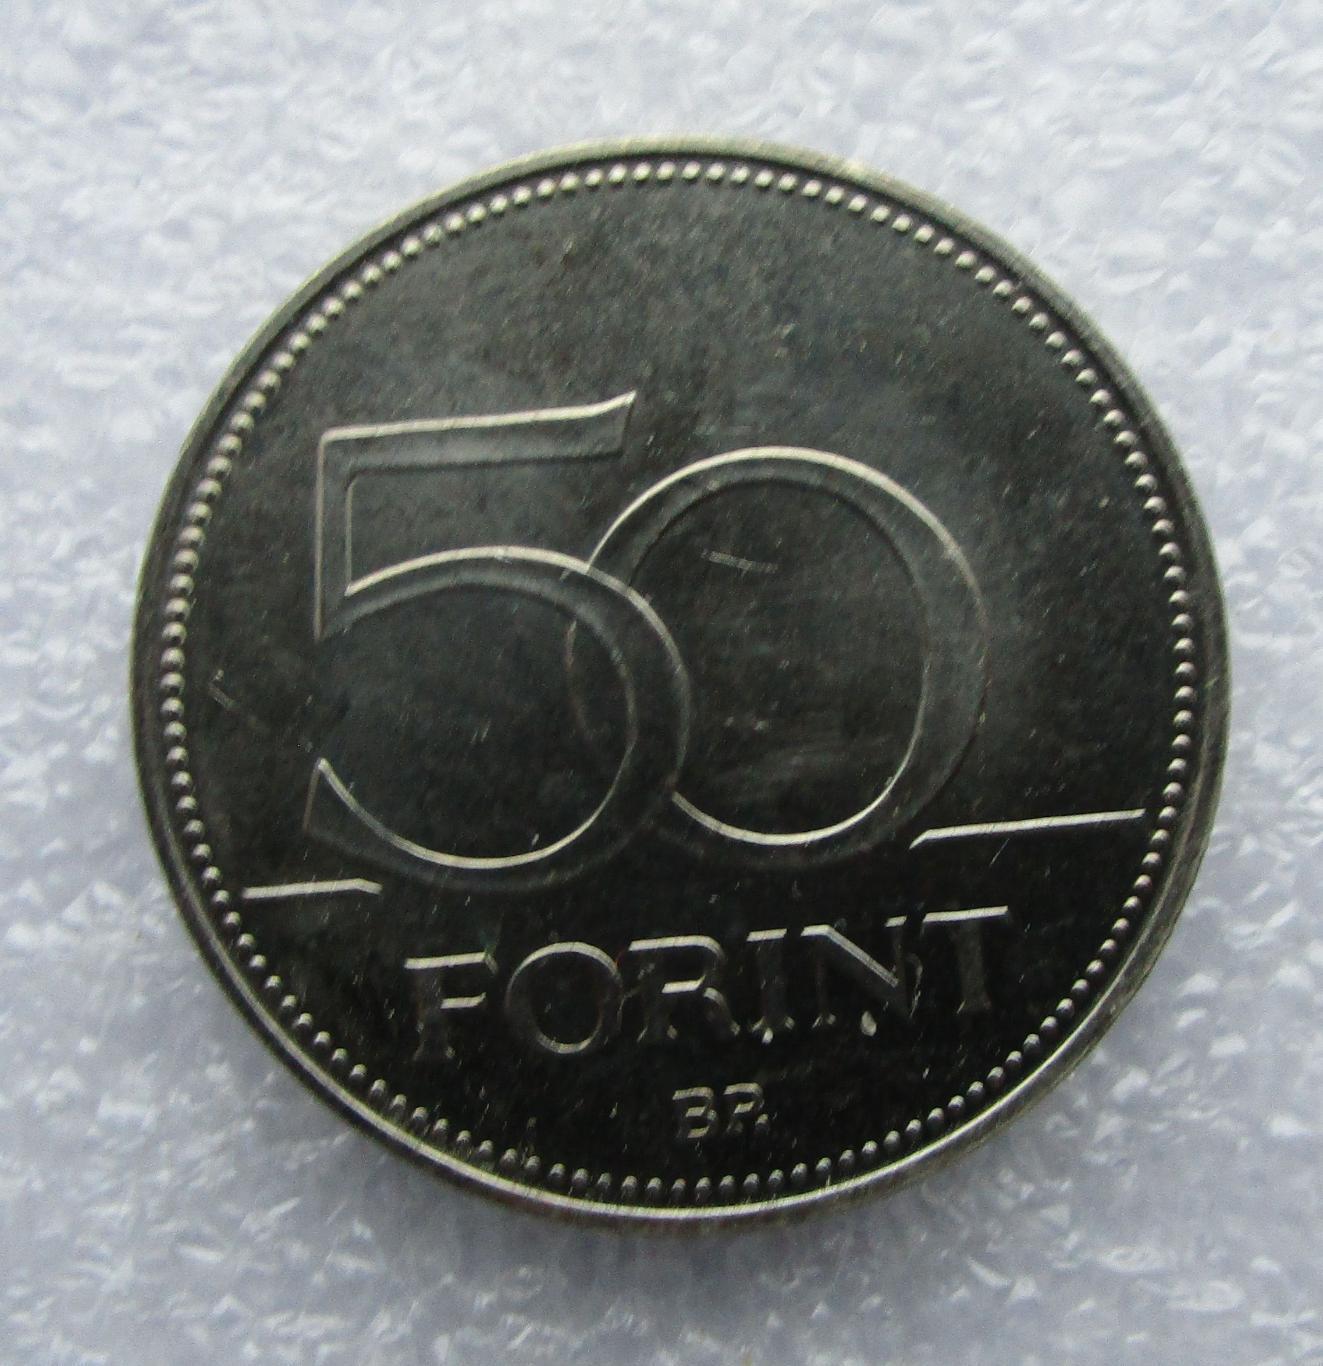 Венгрия 50 форинтов - 2016. 70 лет форинту. UNC. 2